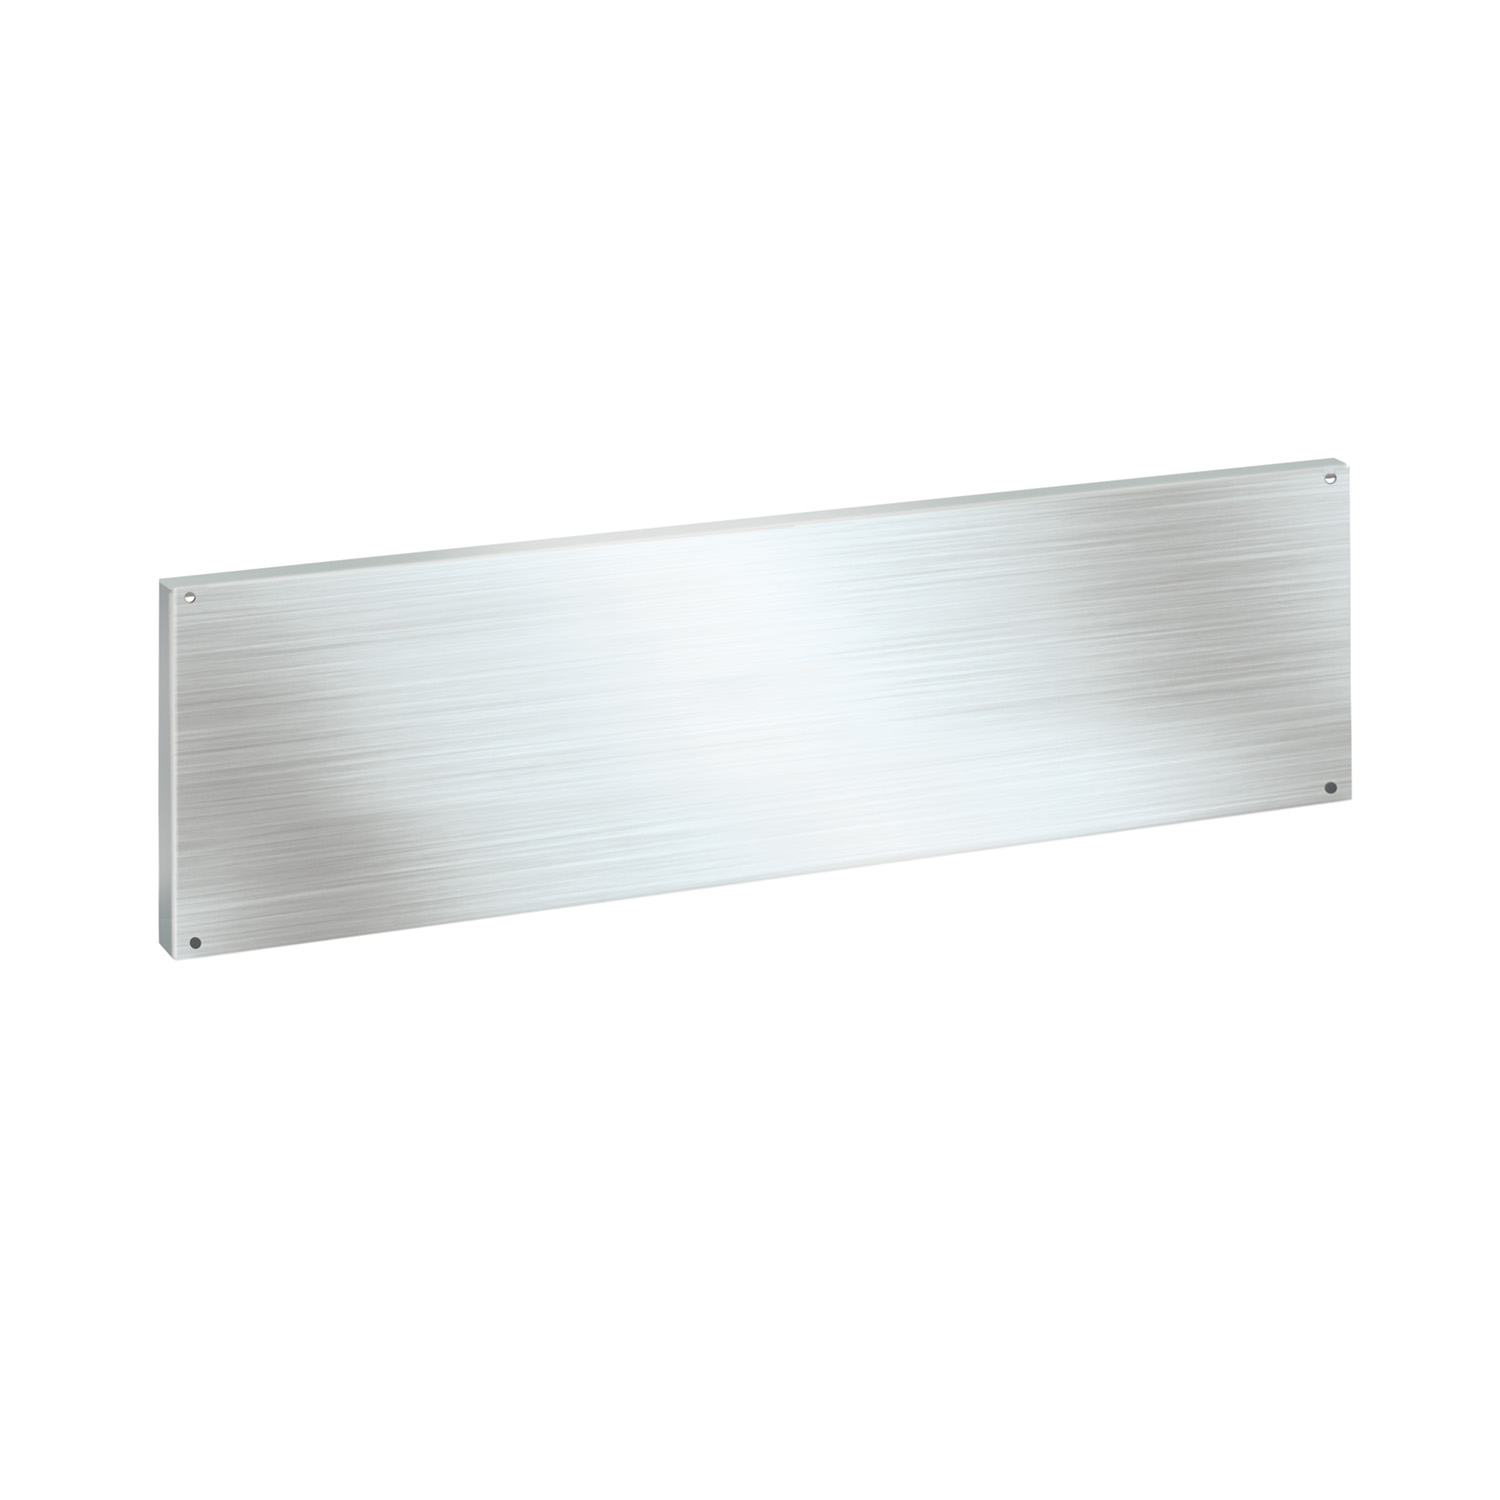 Paneles traseros de acero inoxidable (300 x 1200mm)